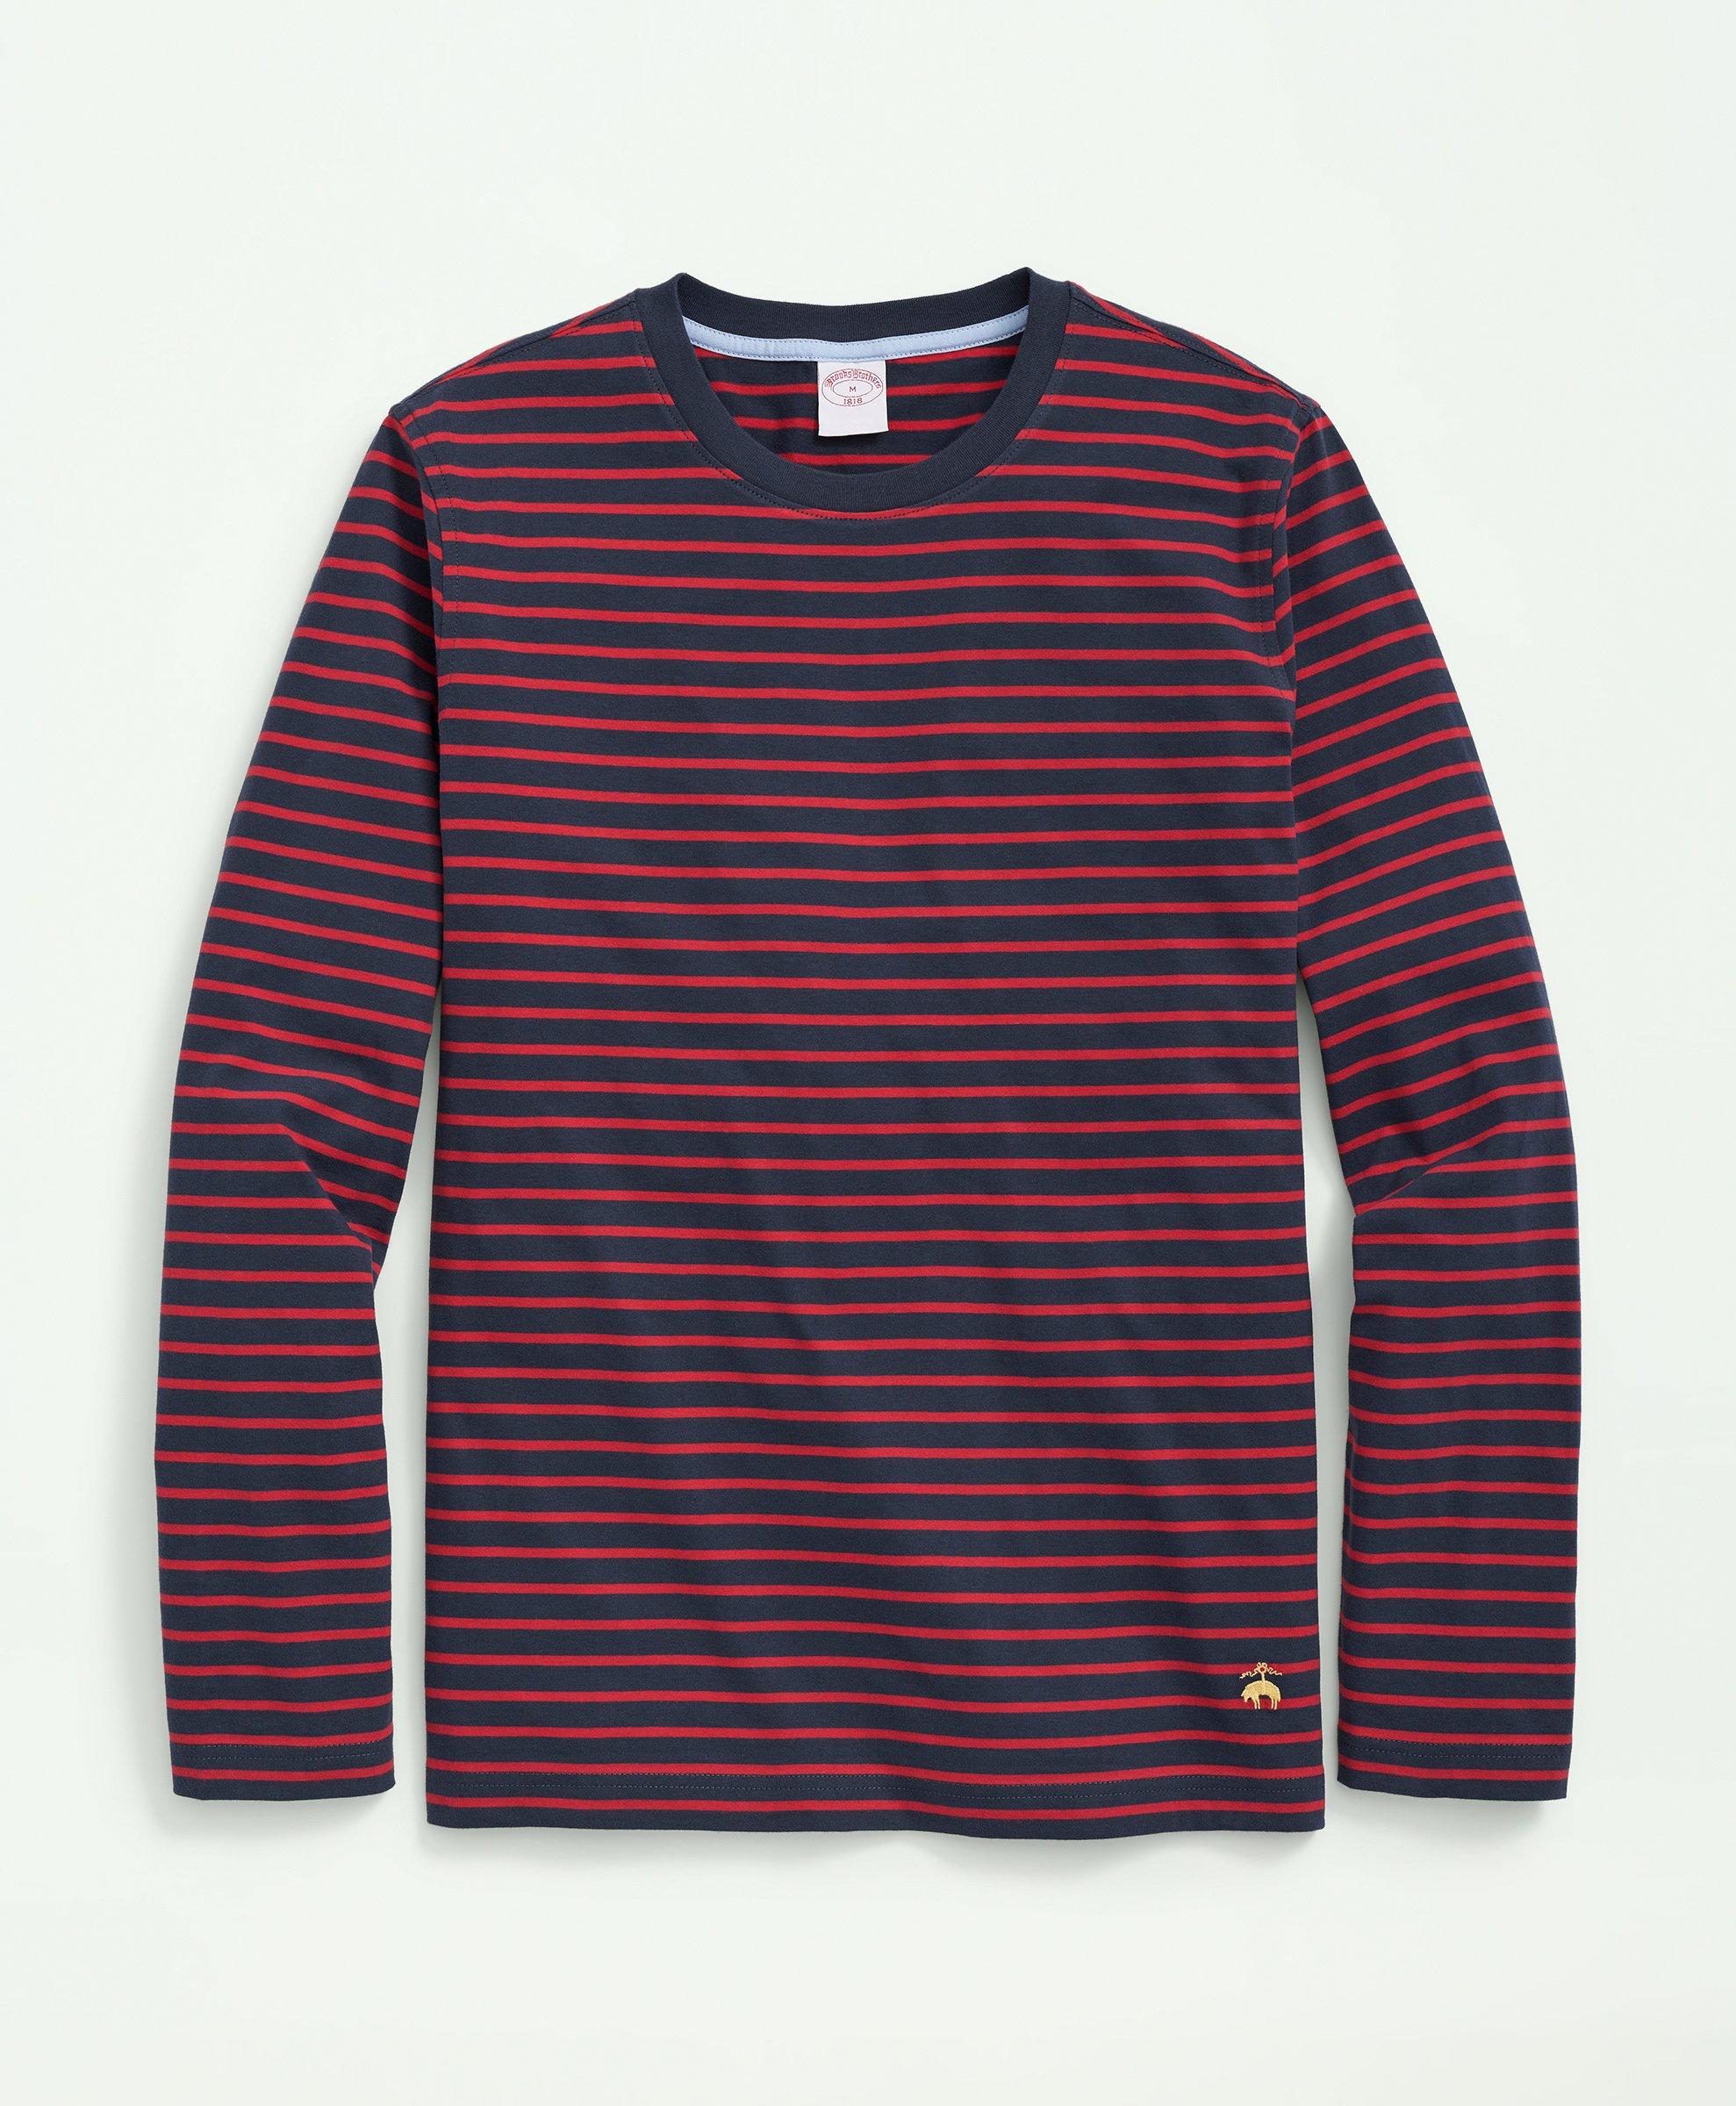 BEST Louis Vuitton Green Grey Mix Stripe Red Luxury Brand T-Shirt